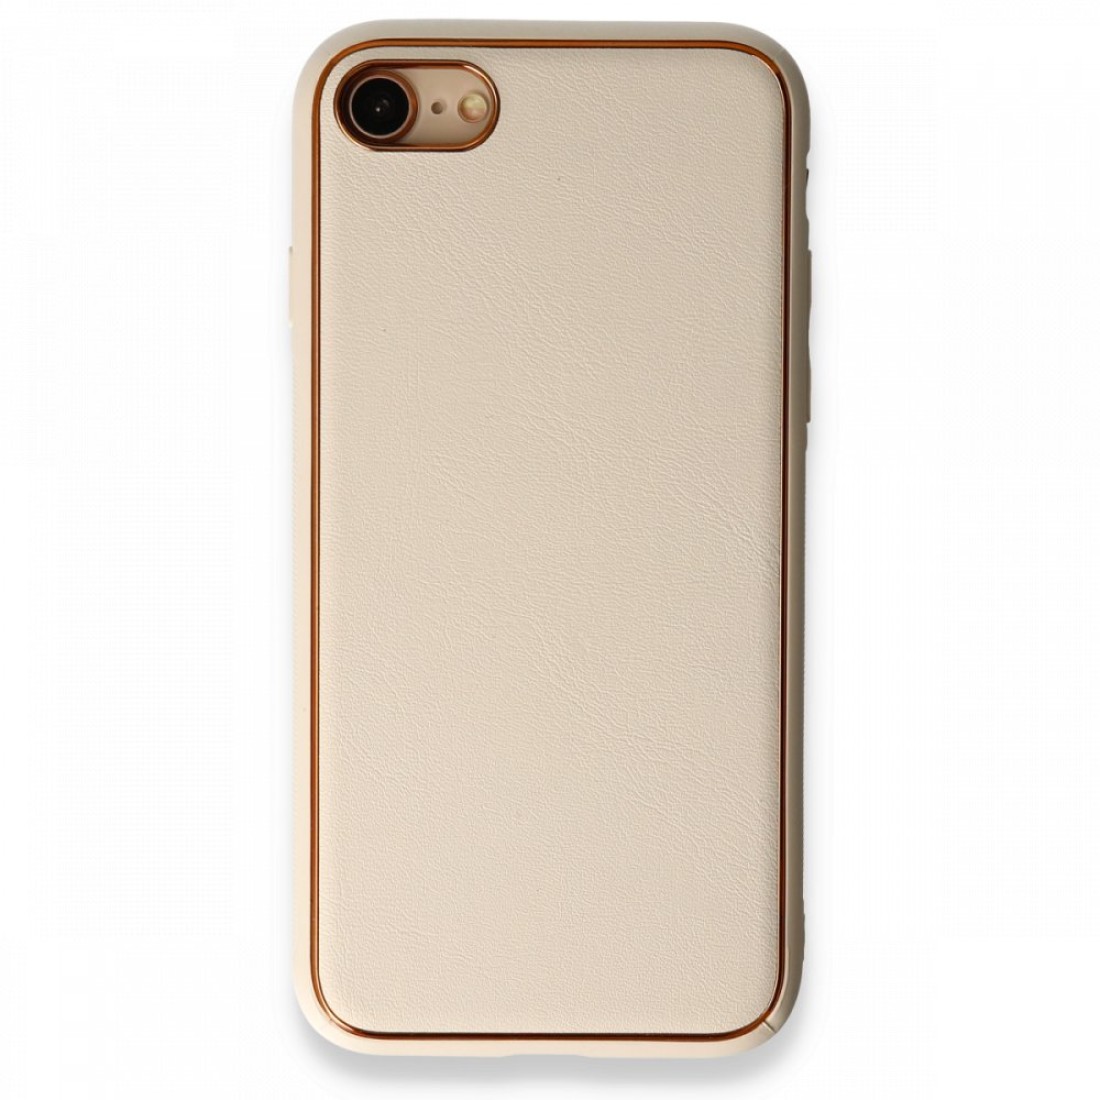 Apple iPhone 8 Kılıf Coco Deri Silikon Kapak - Gold